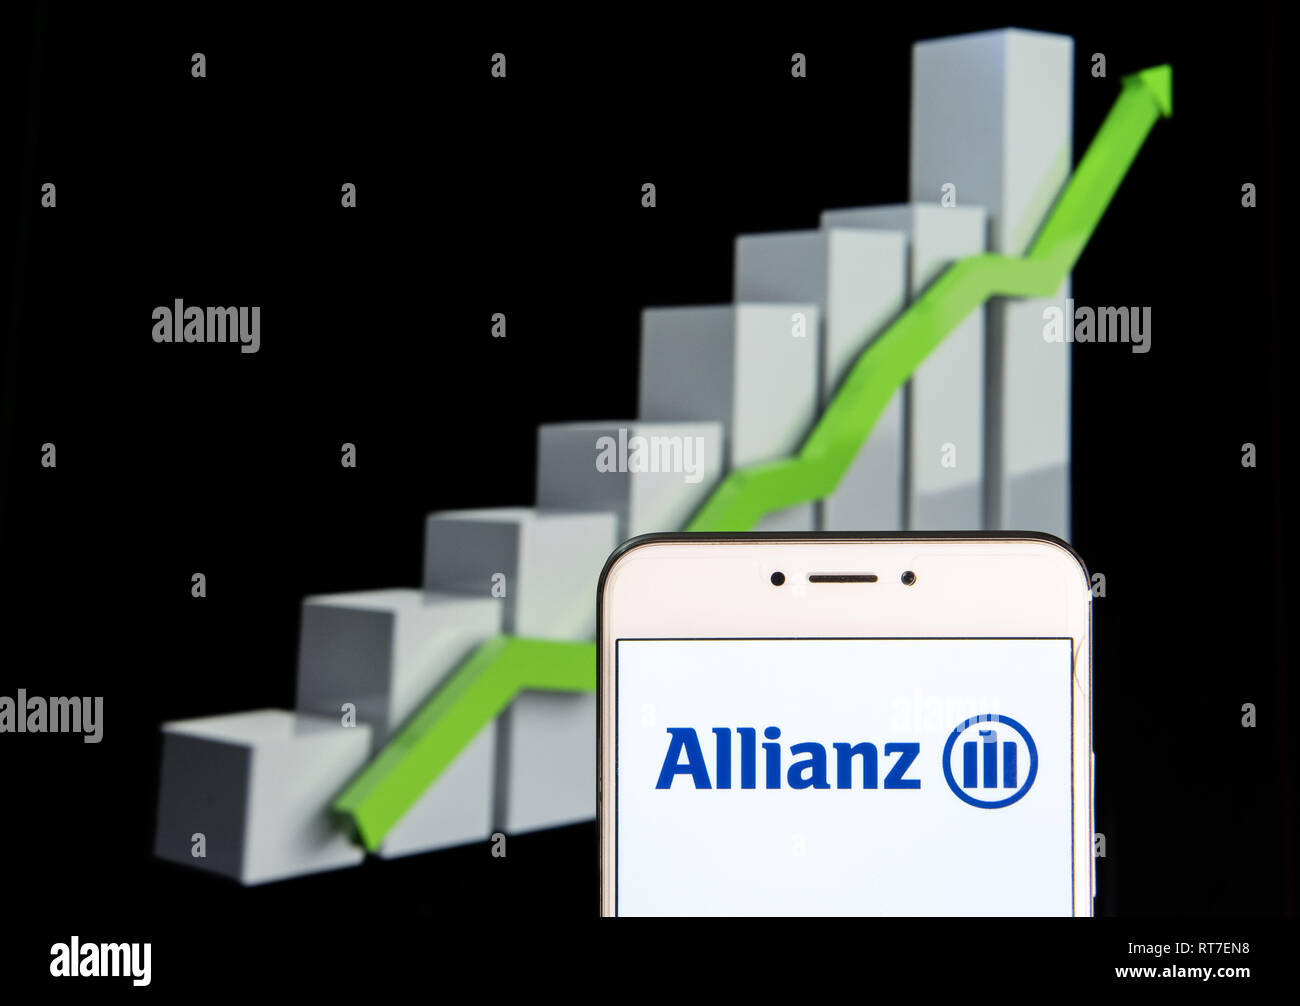 Allianz Stock Chart